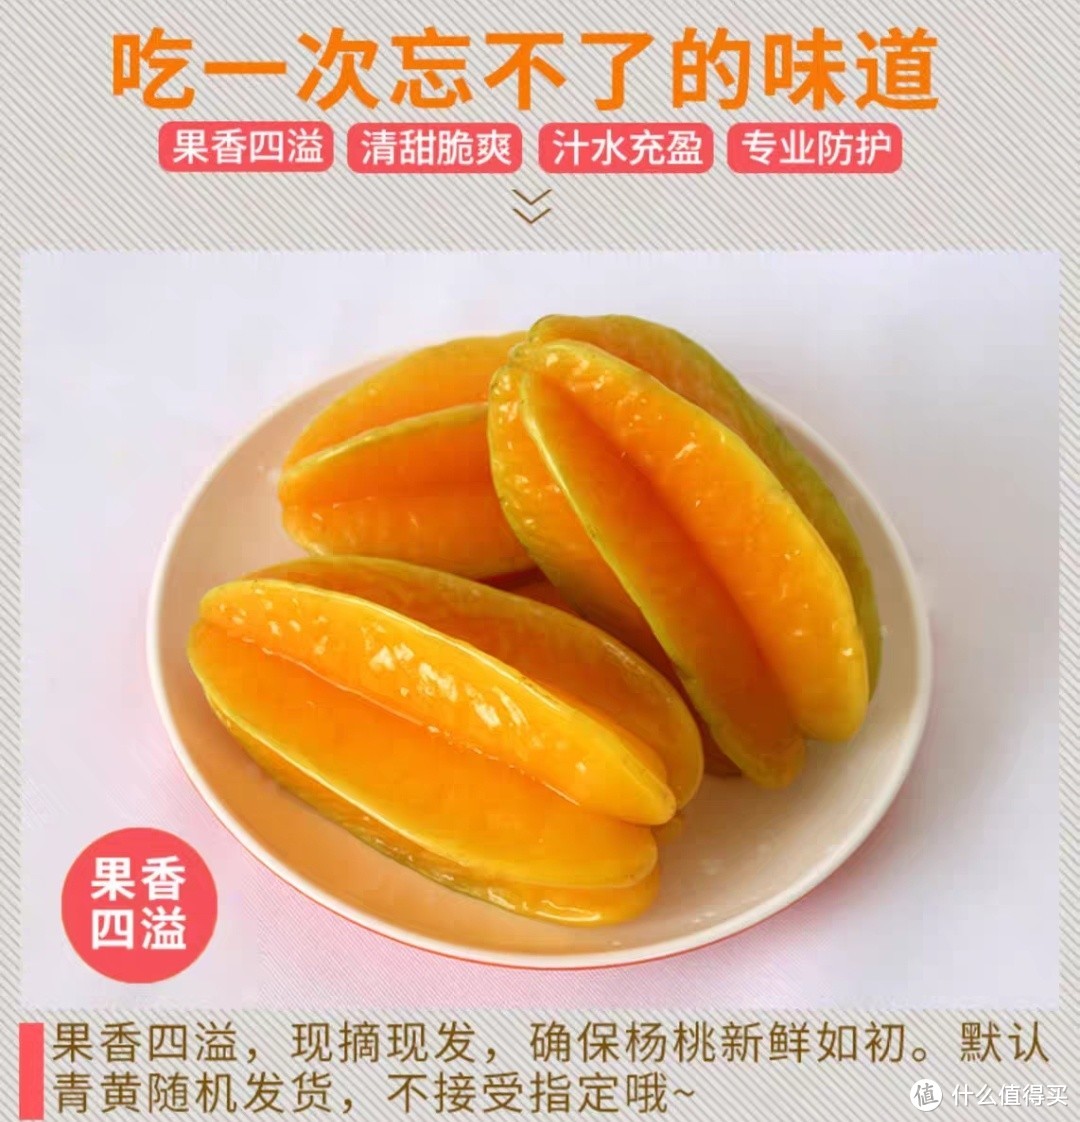 福建漳州甜杨桃6斤水果当季整箱洋桃鲜果新鲜红龙扬桃五角星阳桃